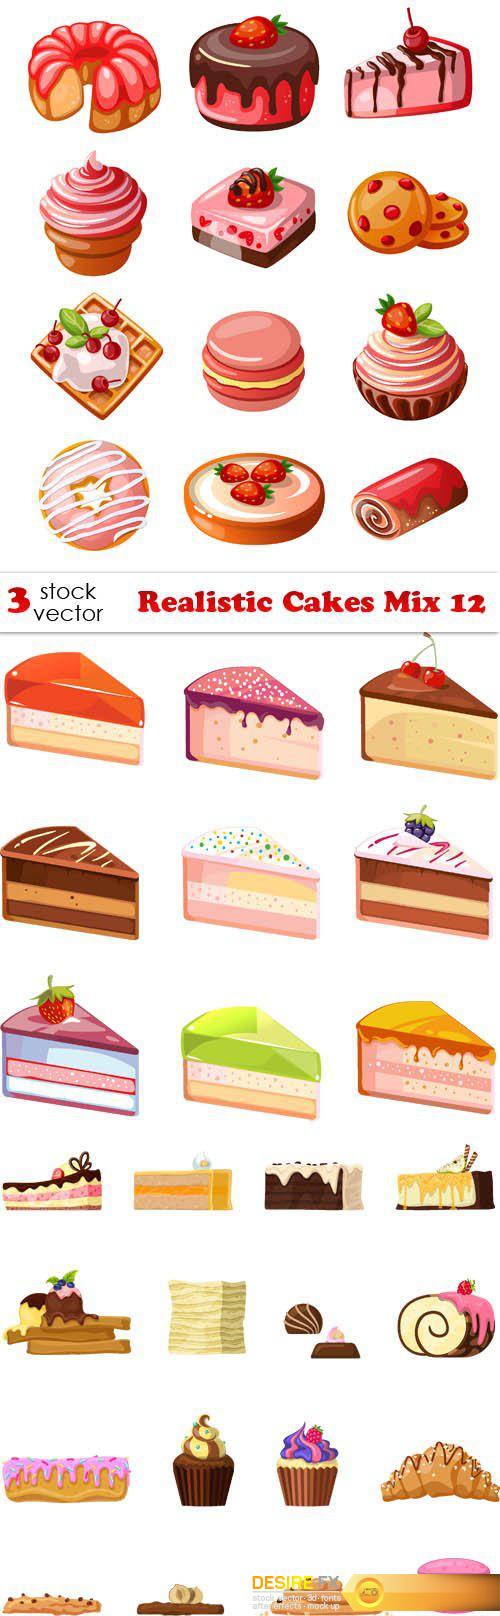 Vectors - Realistic Cakes Mix 12